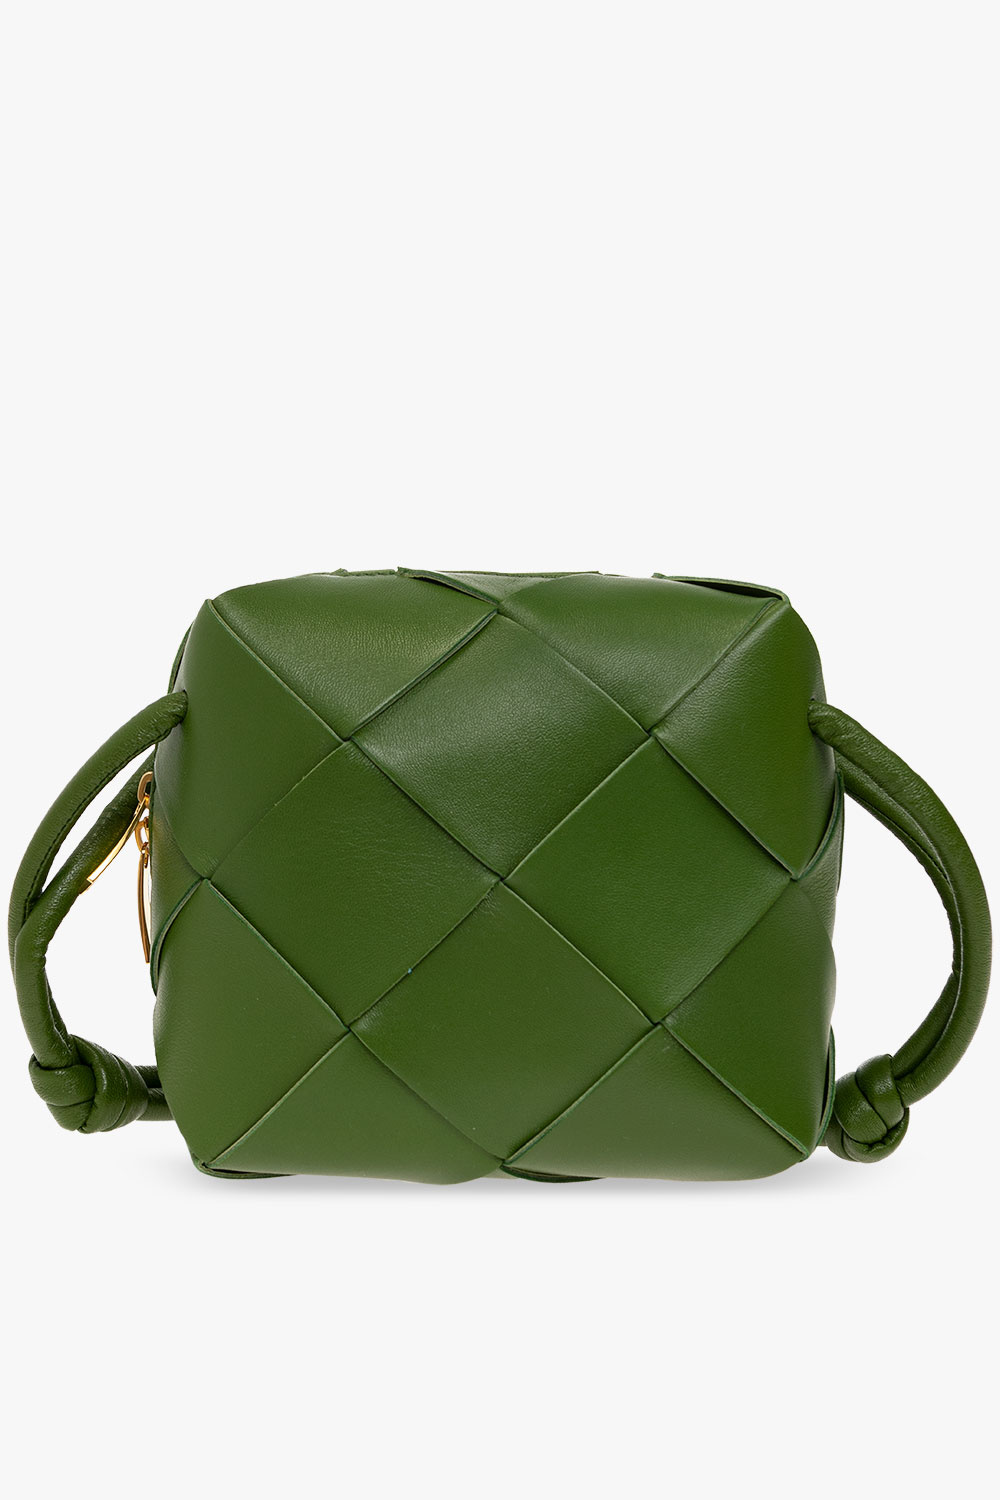 Bottega Veneta 'Cassette Mini' shoulder bag, Women's Bags